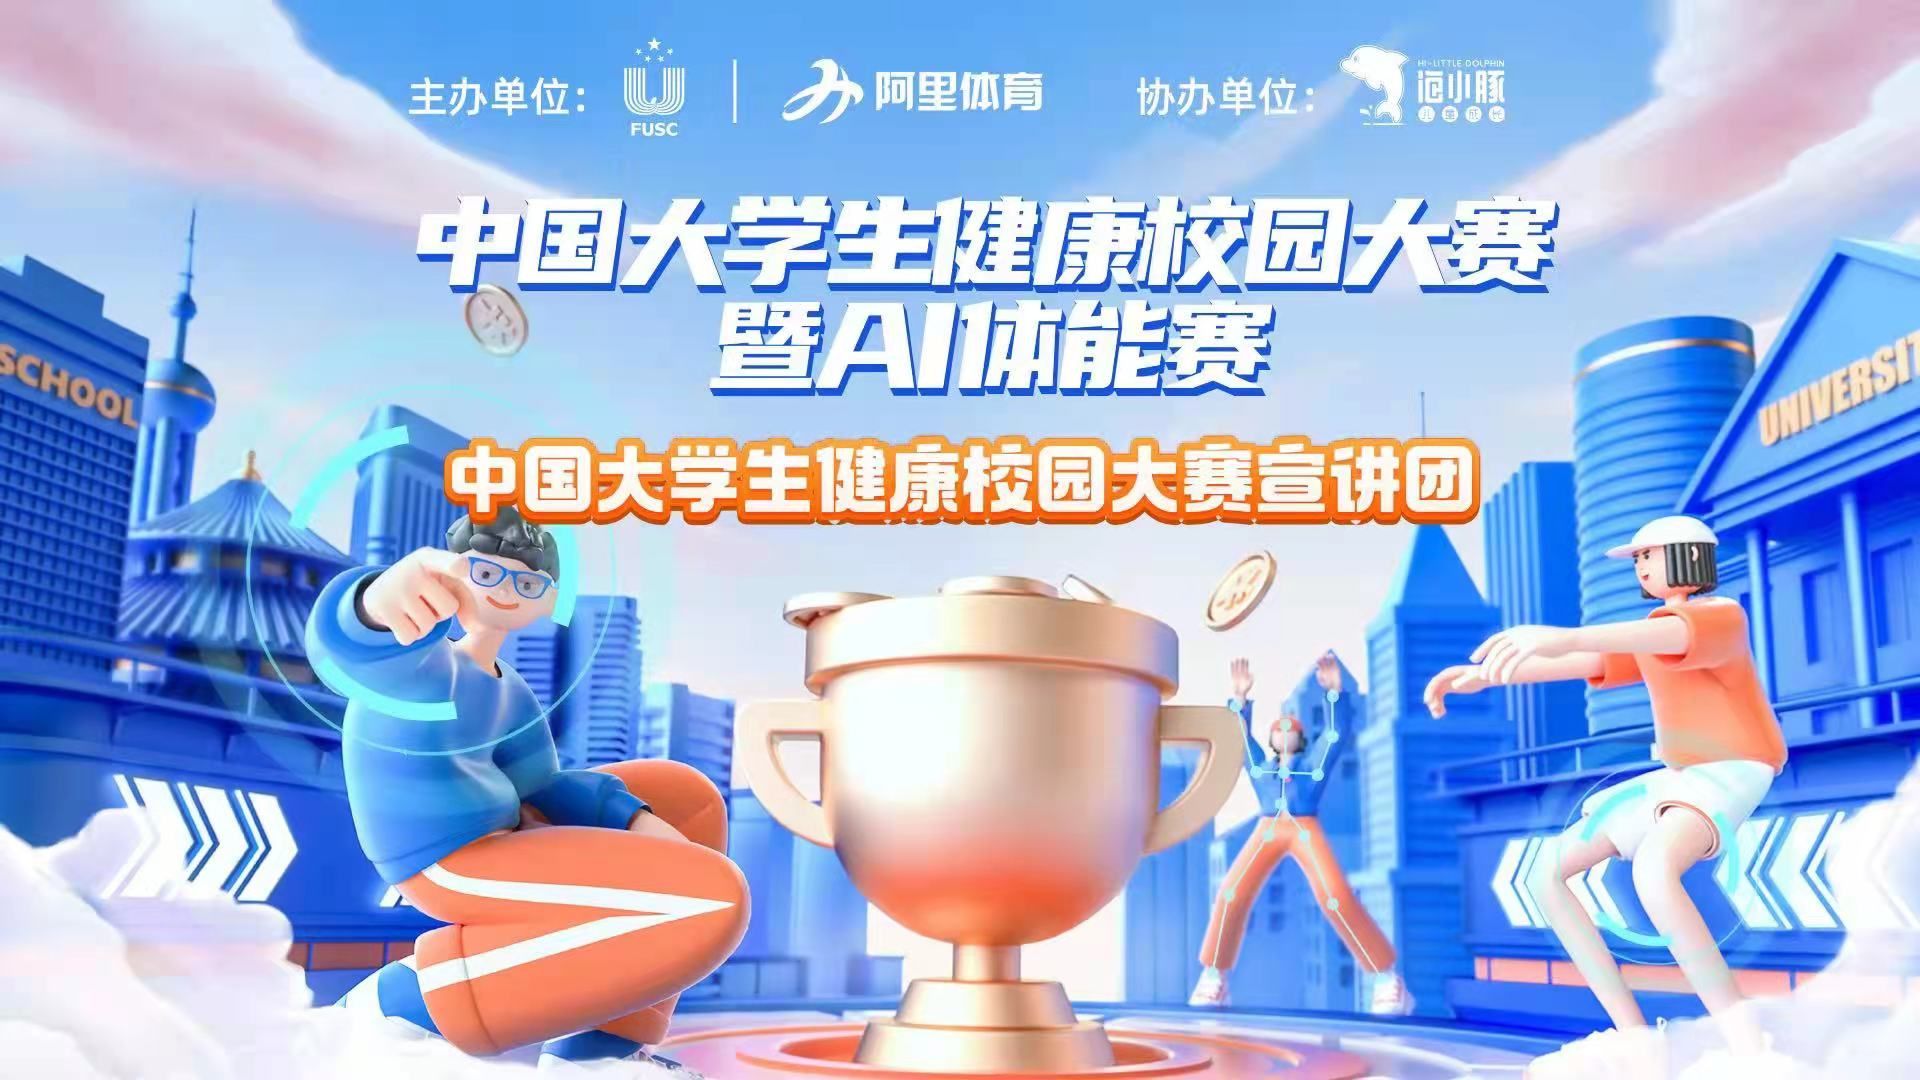 中國大學生健康校園大賽暨AI體能賽新賽季從健康守護出發